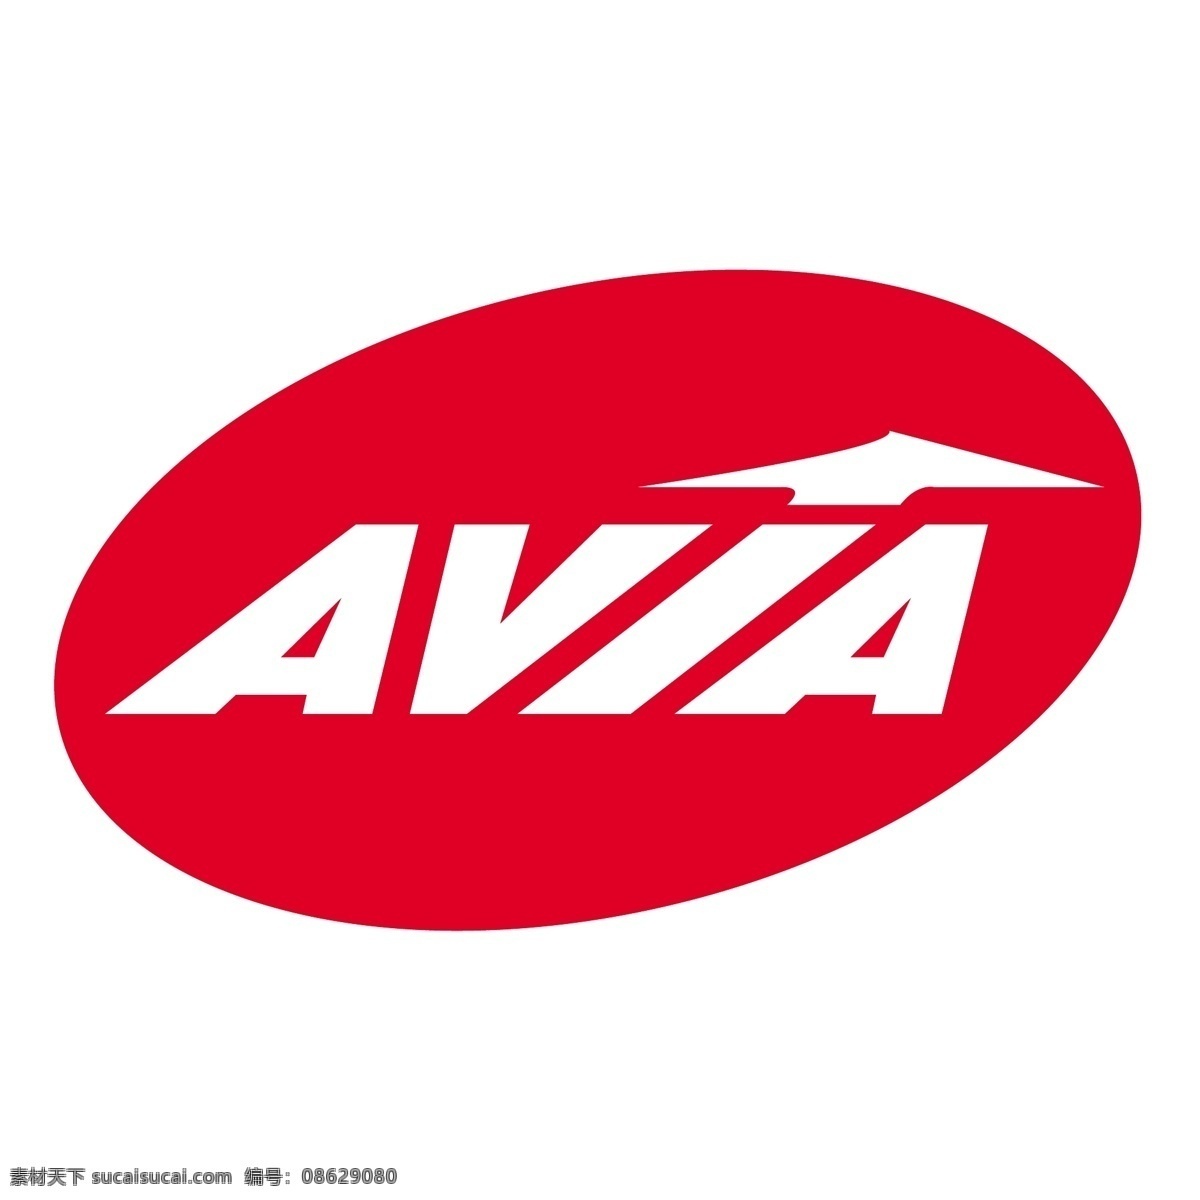 航空 航空标志 航空标志矢量 avia向量 向量 阿维亚 标志 矢量 该矢量标志 航空快递 威 亚 avia 维德 尼克